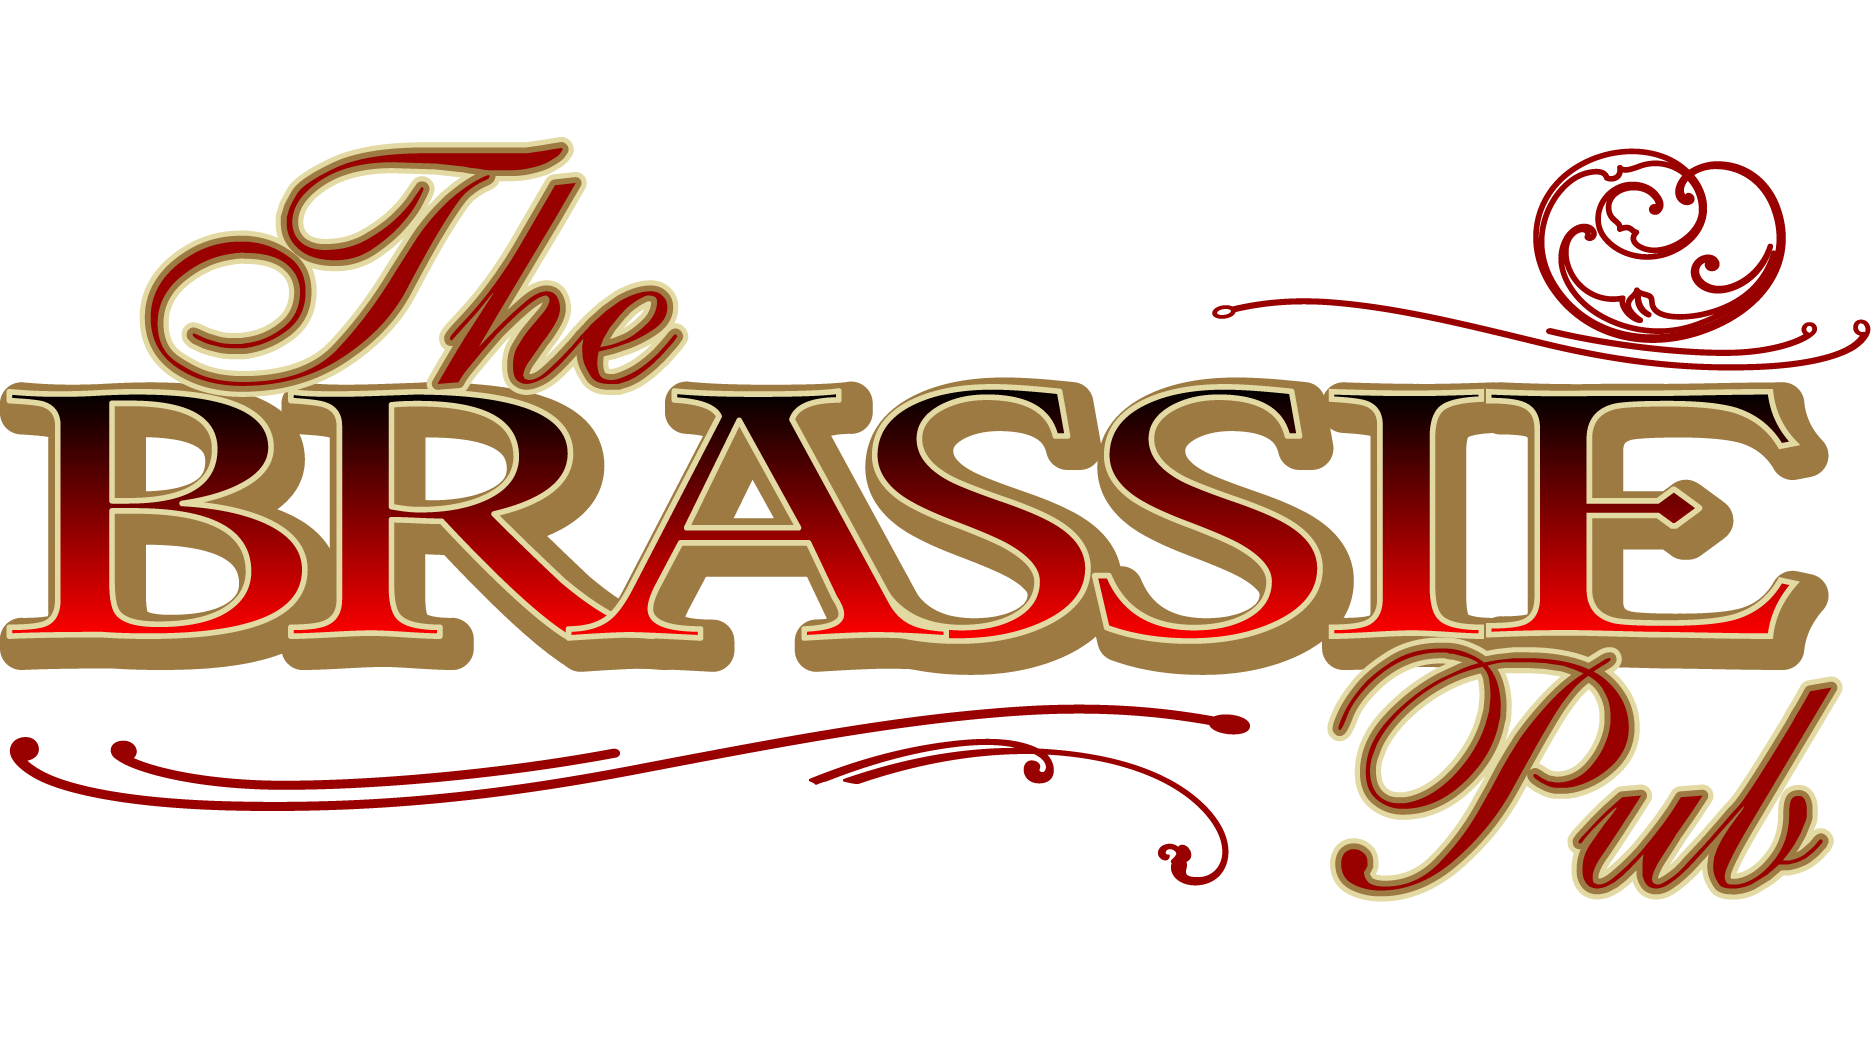 The Brassie Pub